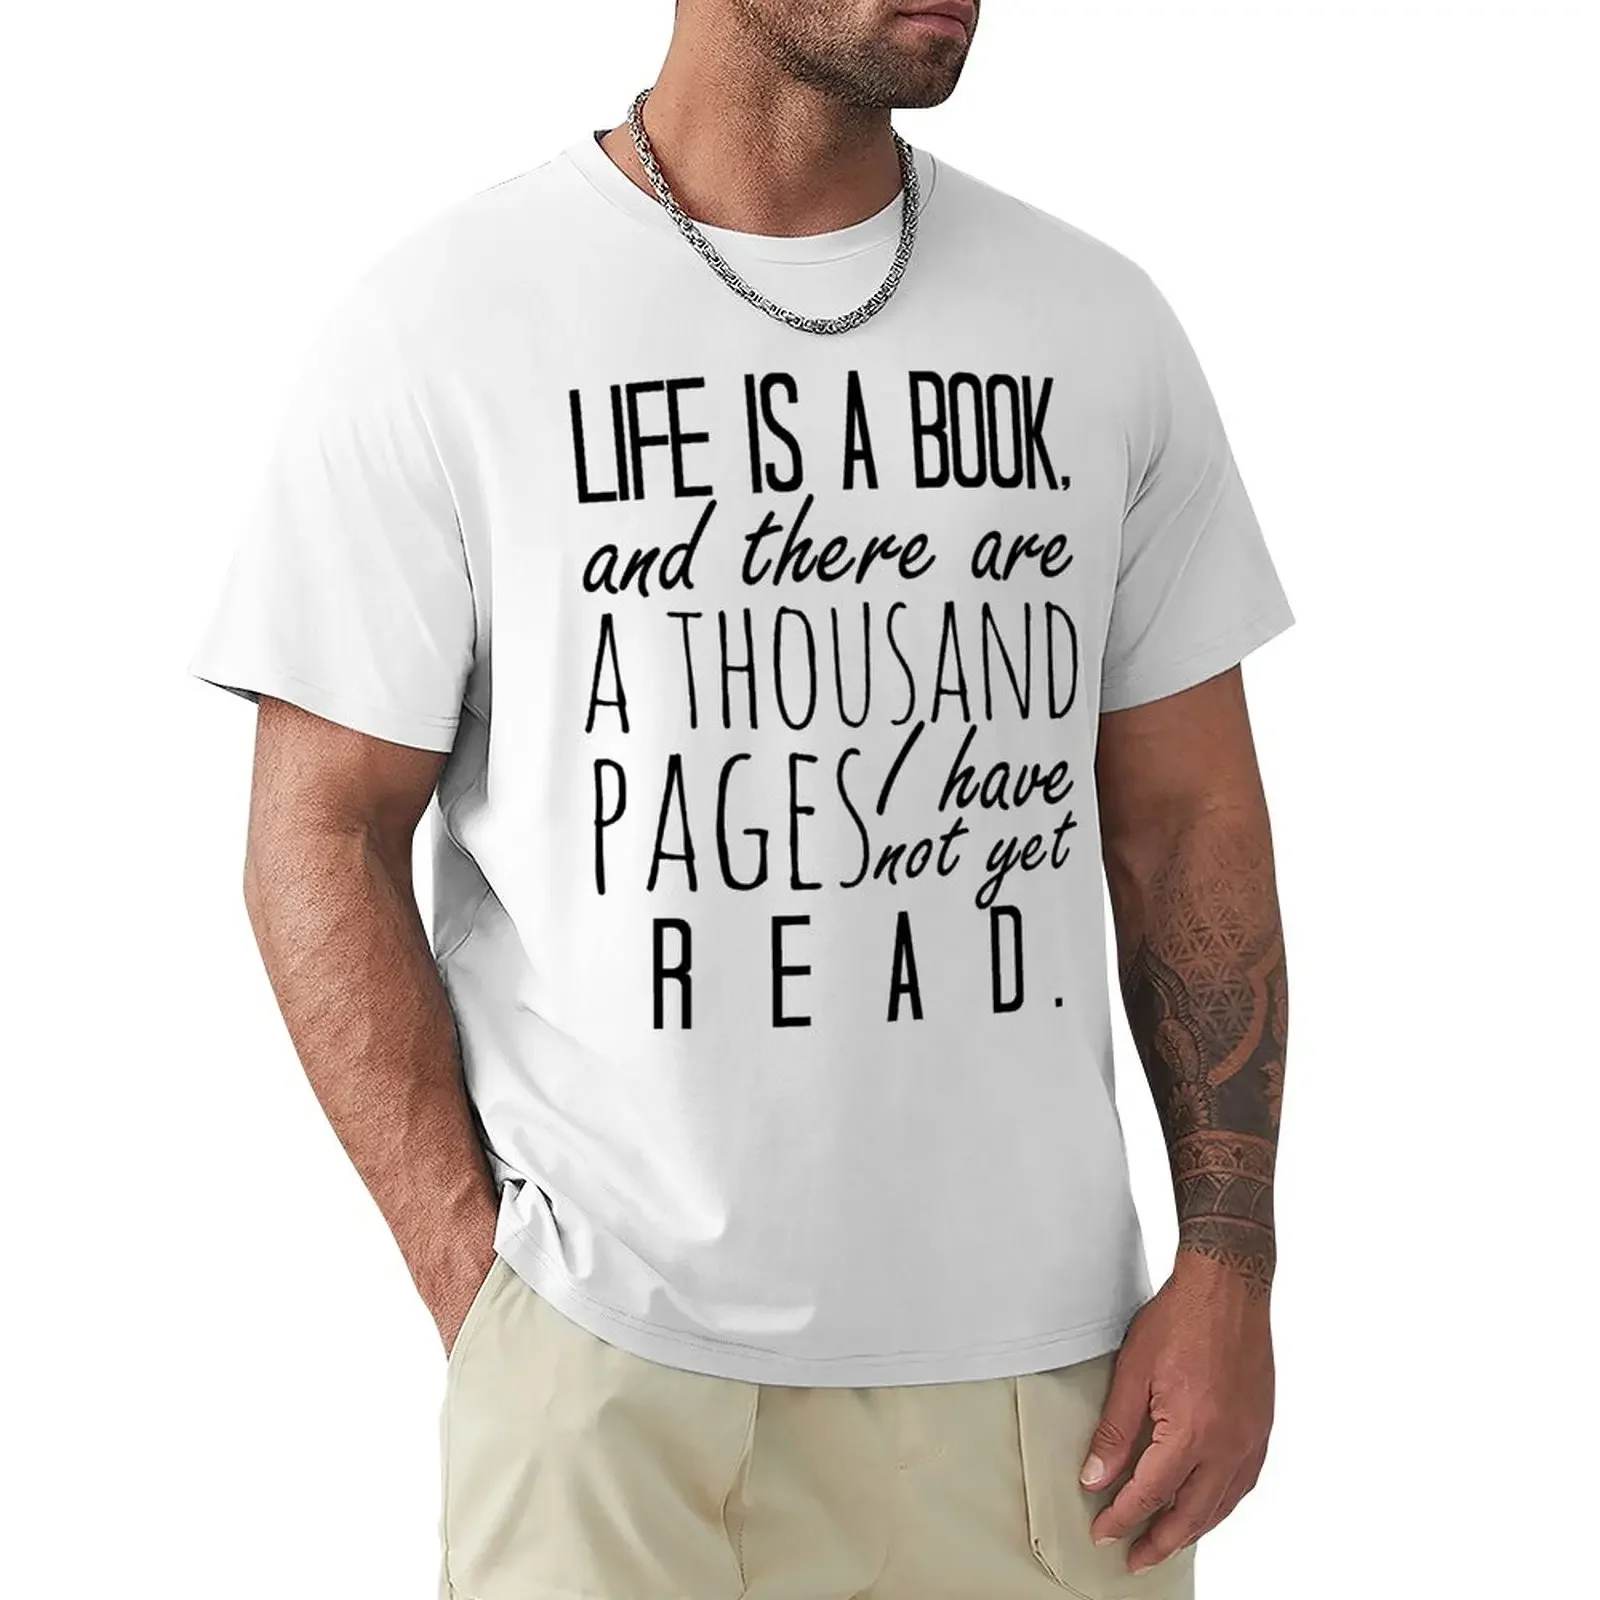 

Жизнь-это книга... -Футболка с надписью Will Herondale, винтажная одежда, мужские футболки на заказ